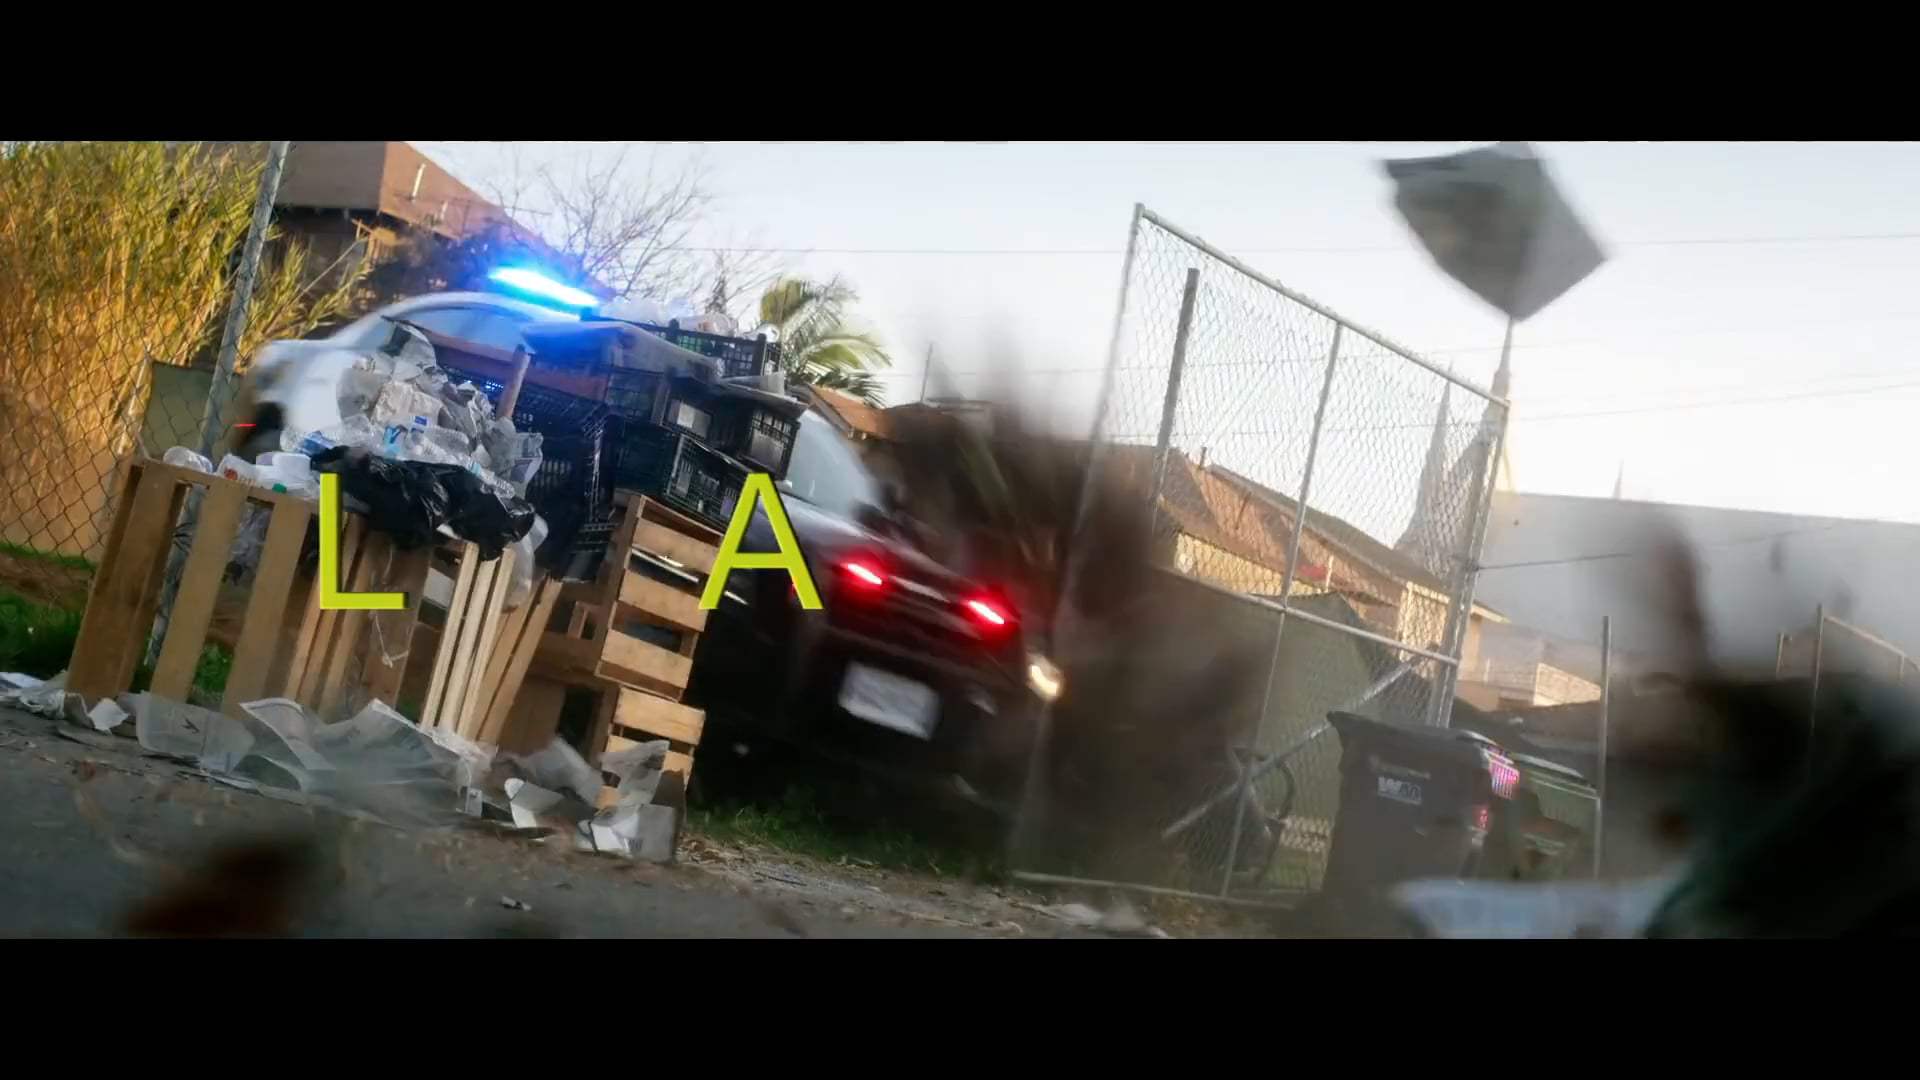 Ambulance Super Bowl TV Spot (2022) Screen Capture #3